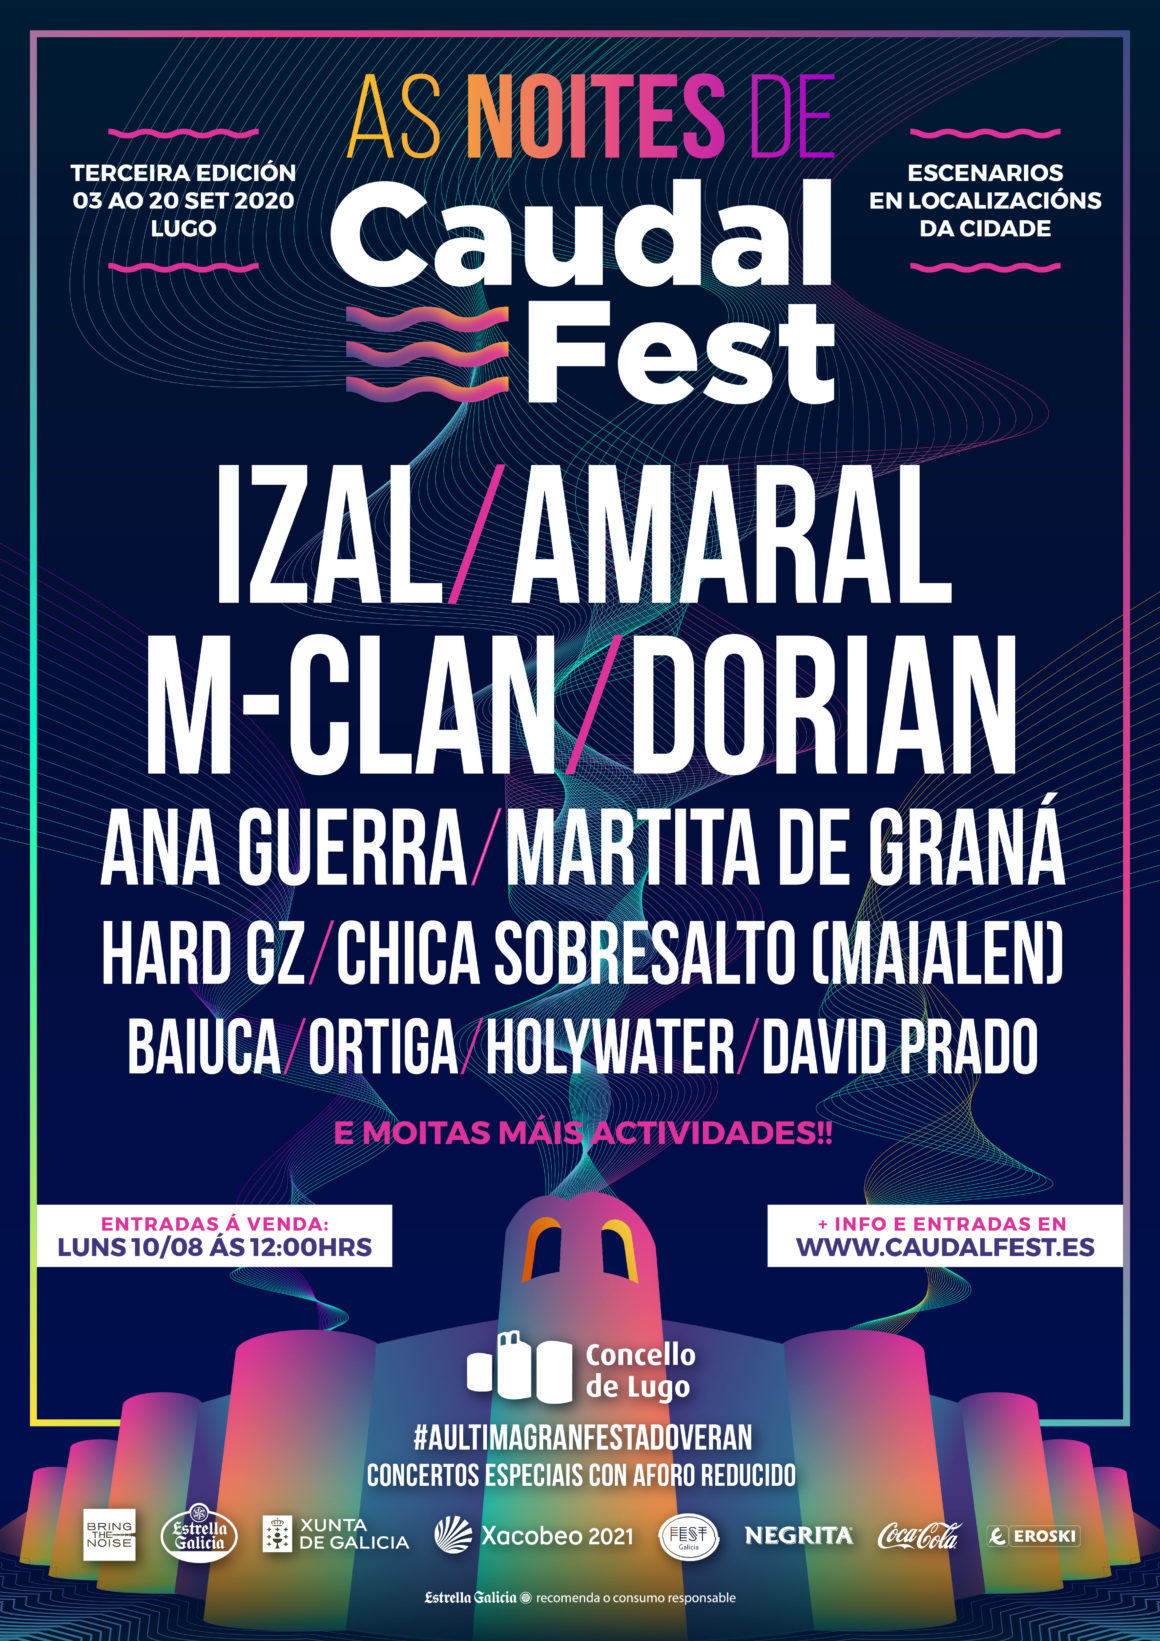 Presentamos As Noites de Caudal Fest: un ciclo de conciertos seguros y de aforo reducido en Lugo en septiembre